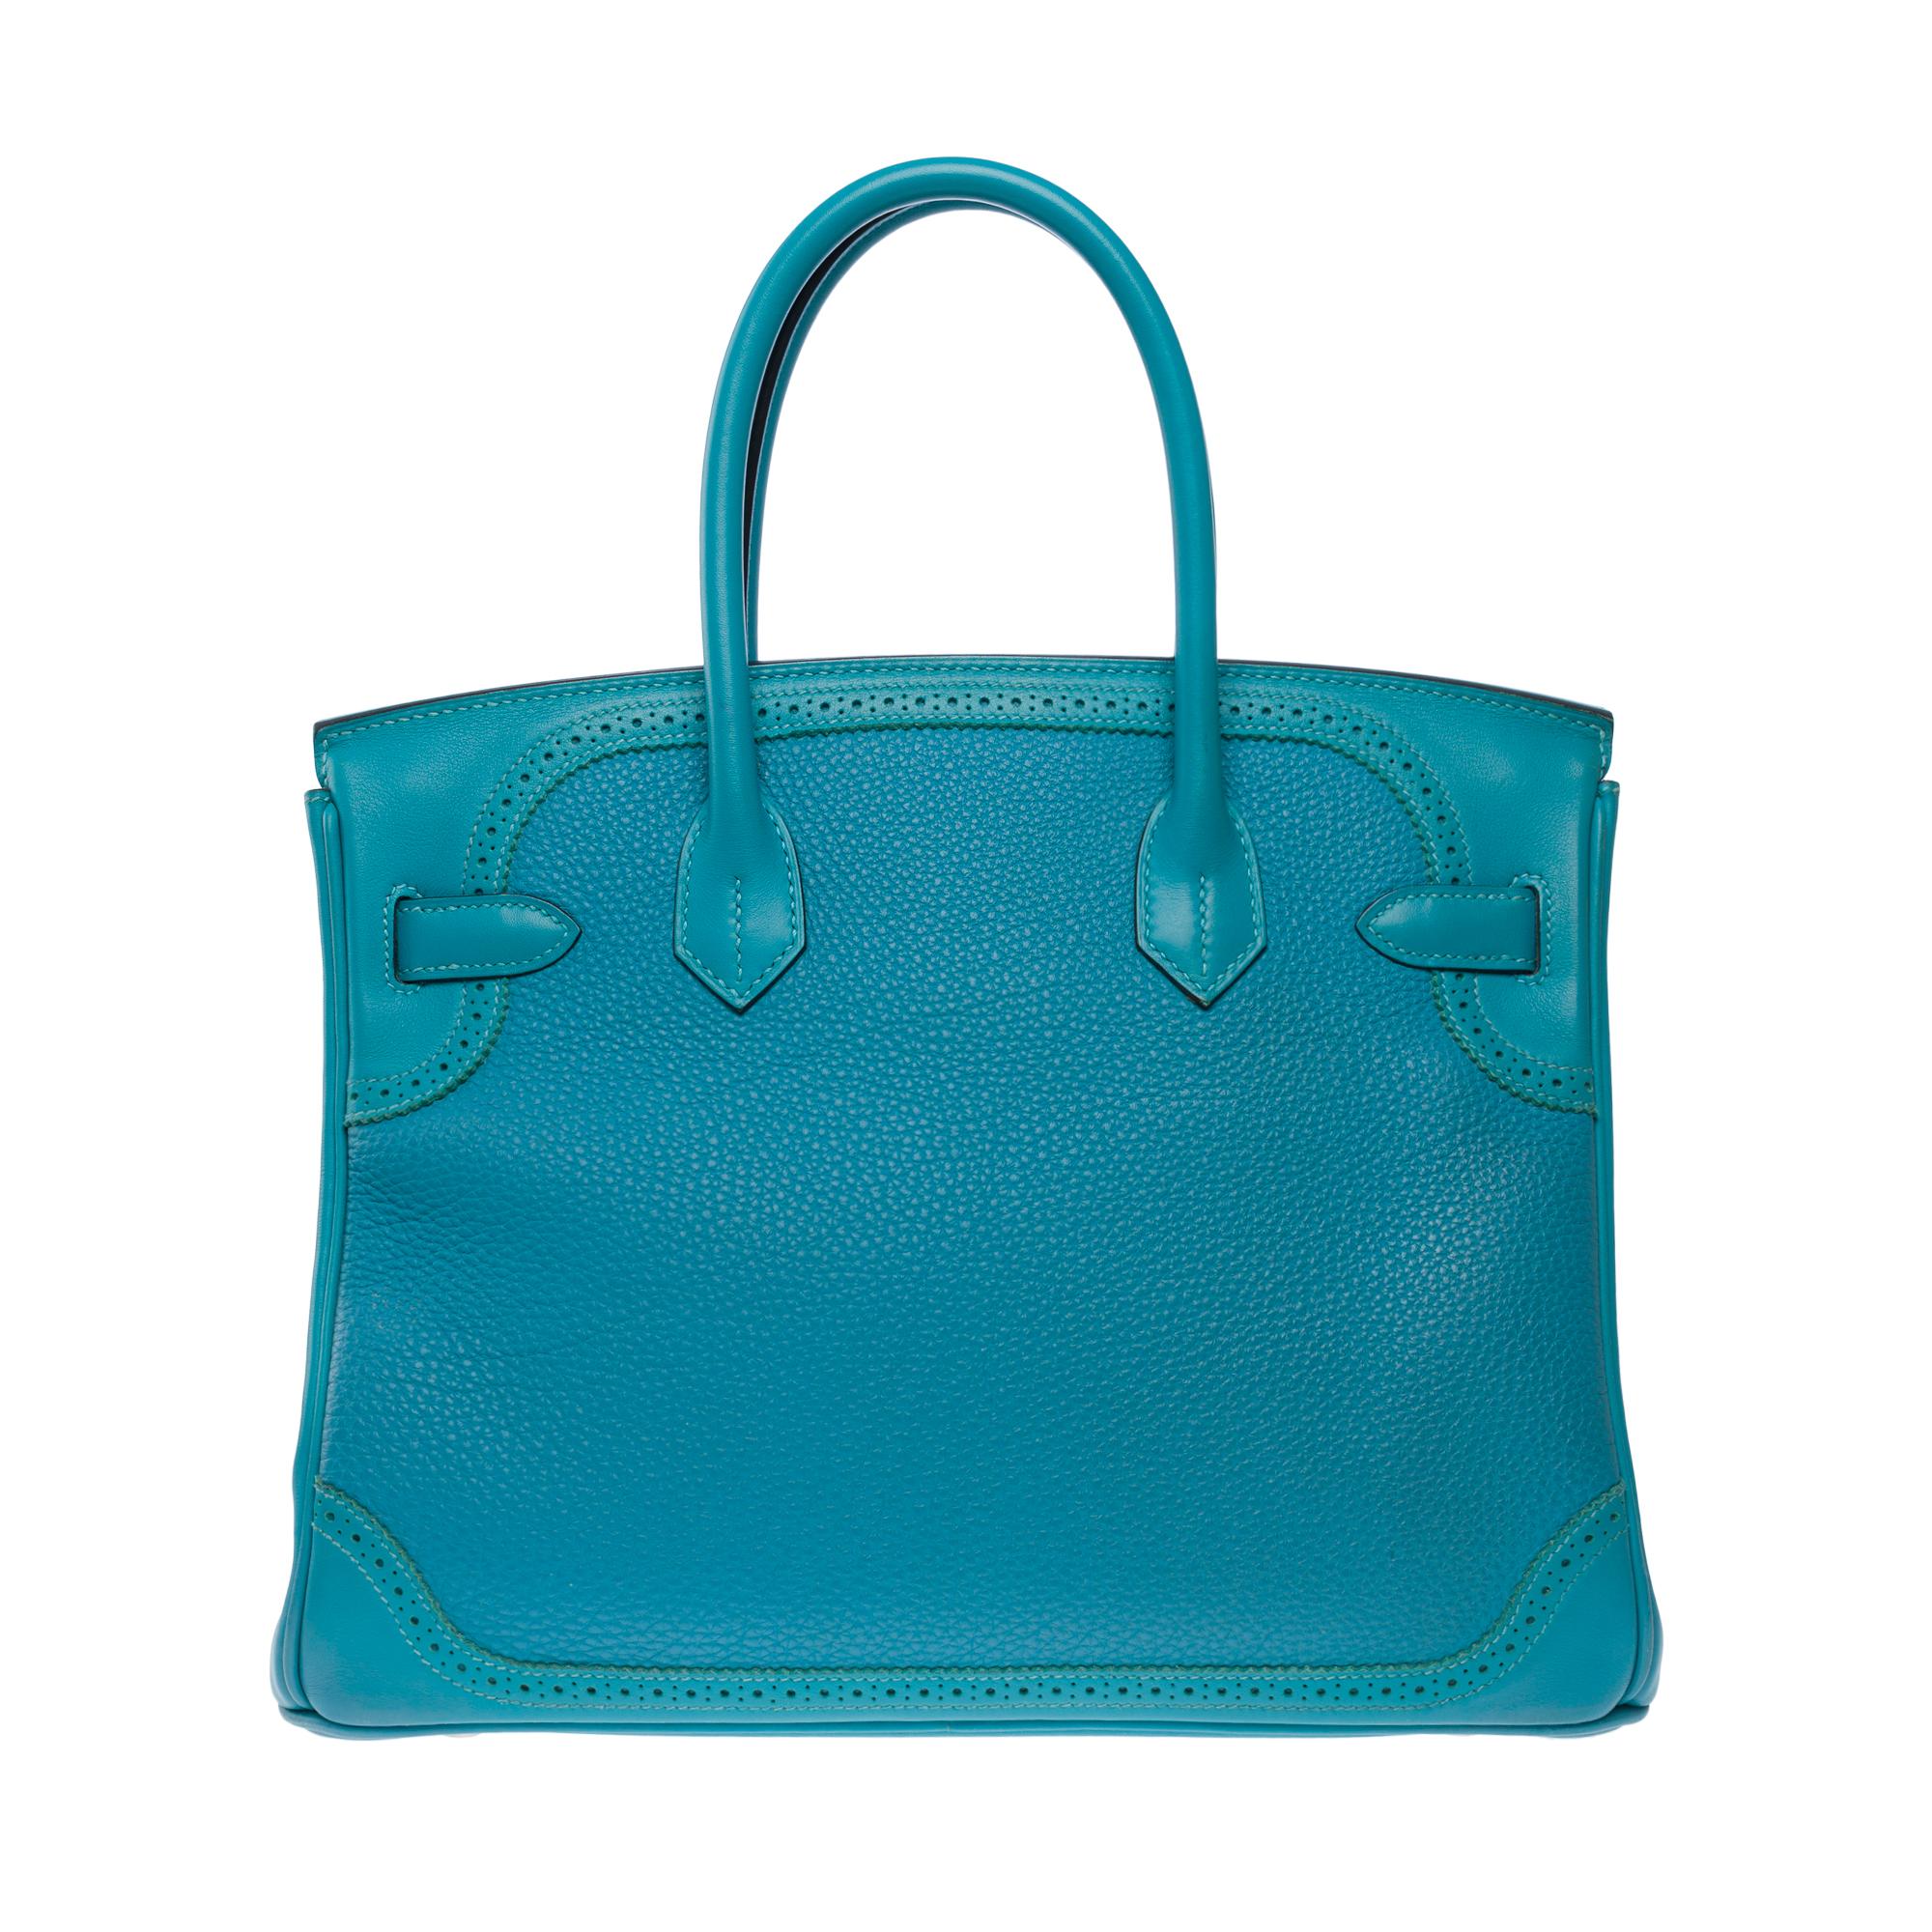 Ghillies Limited Edition Hermes Birkin 30 Handtasche aus türkisblauem Leder in Türkisblau, SHW Damen im Angebot